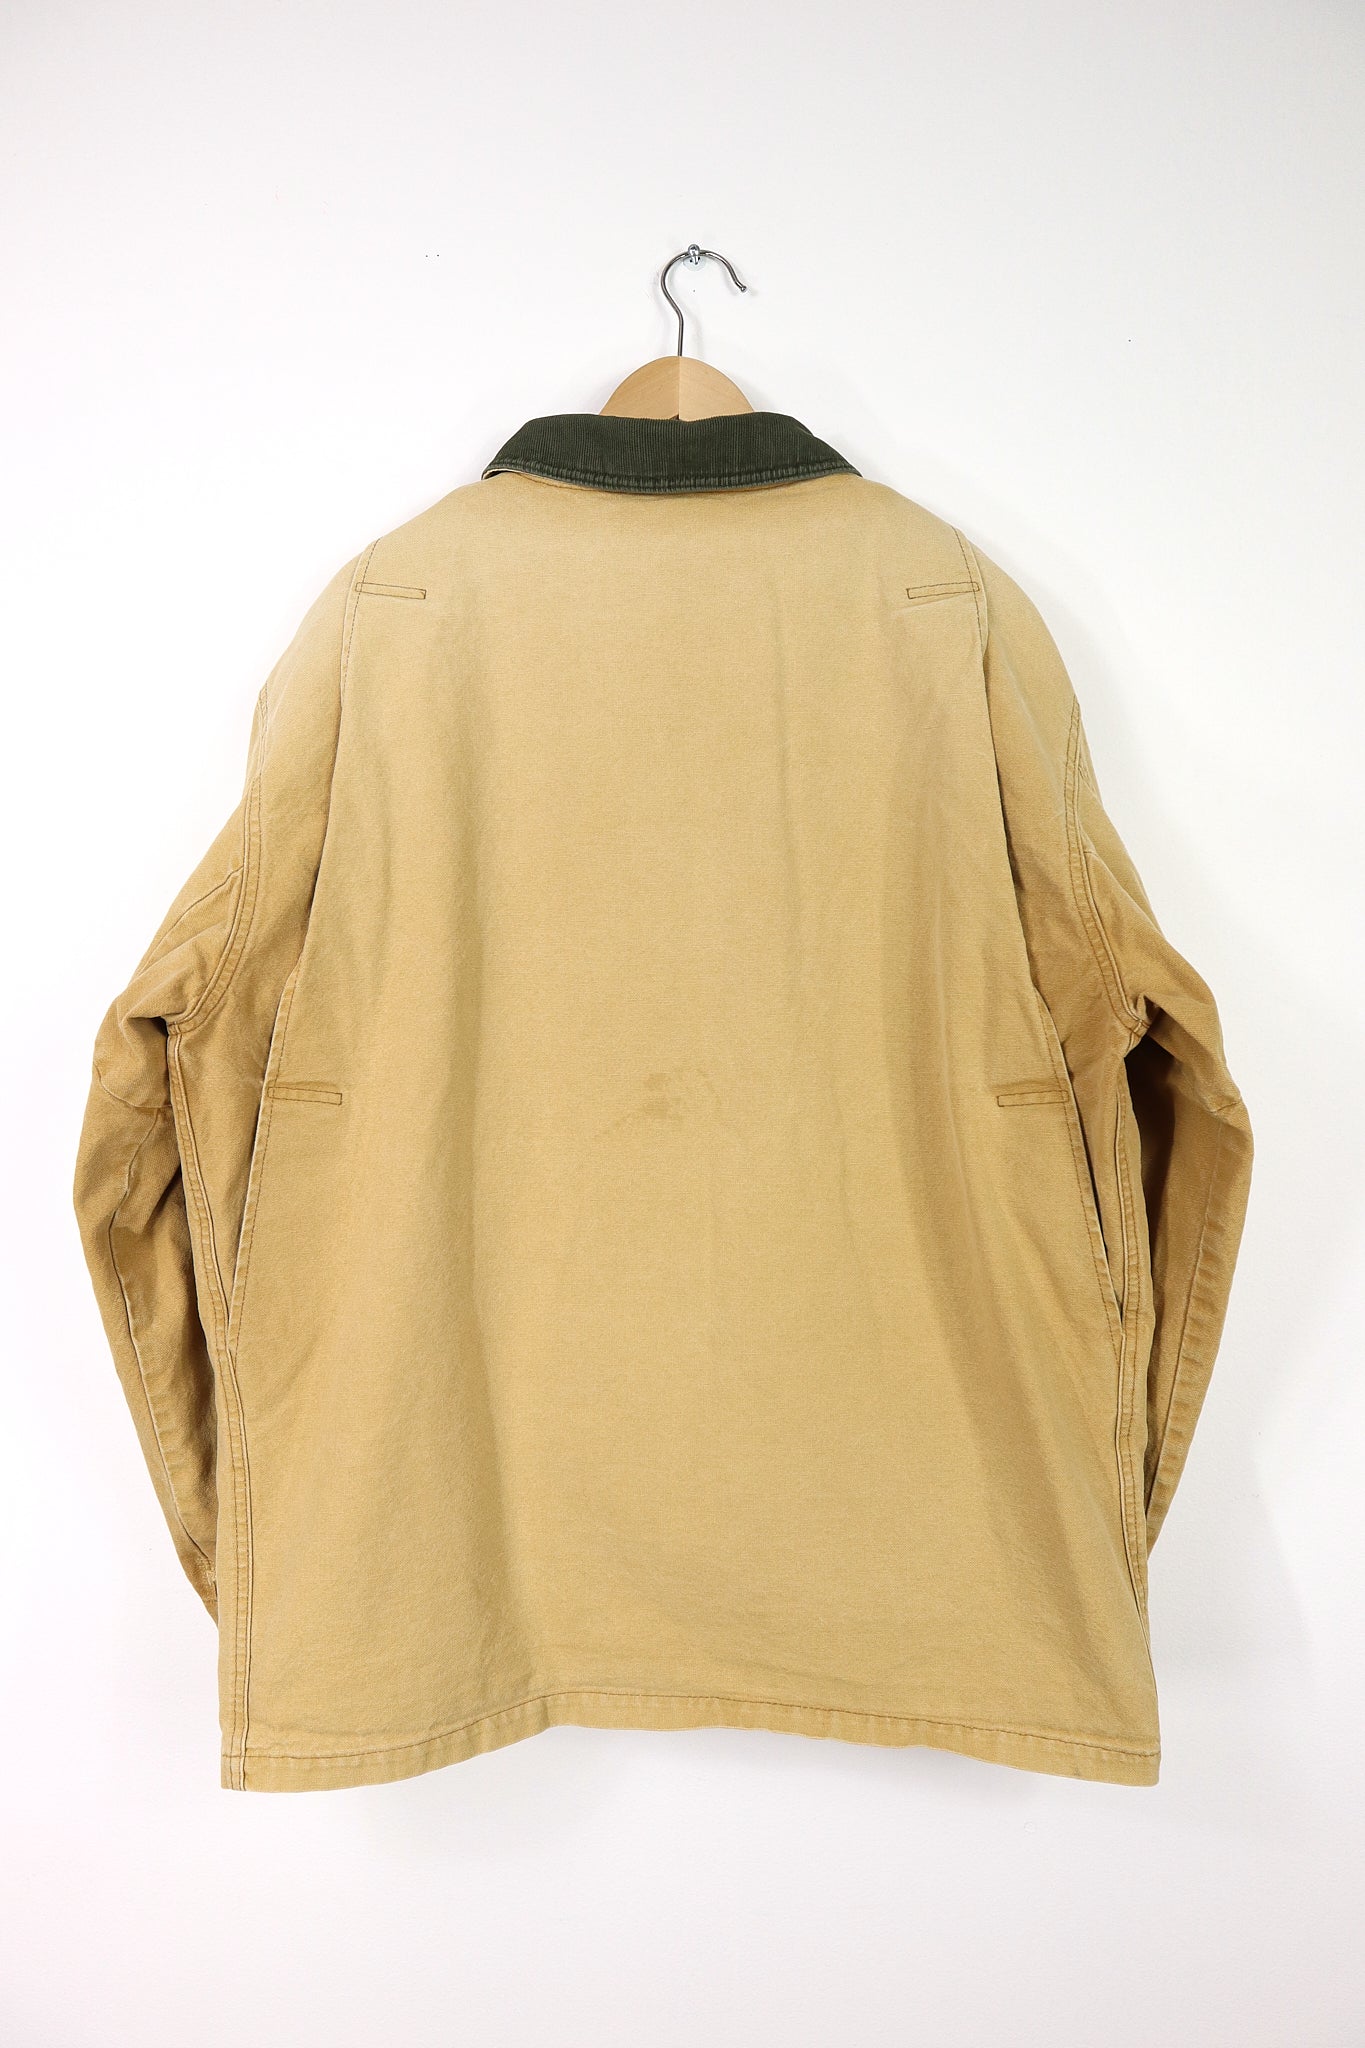 Vintage L.L. Bean Flannel Lined Field Jacket